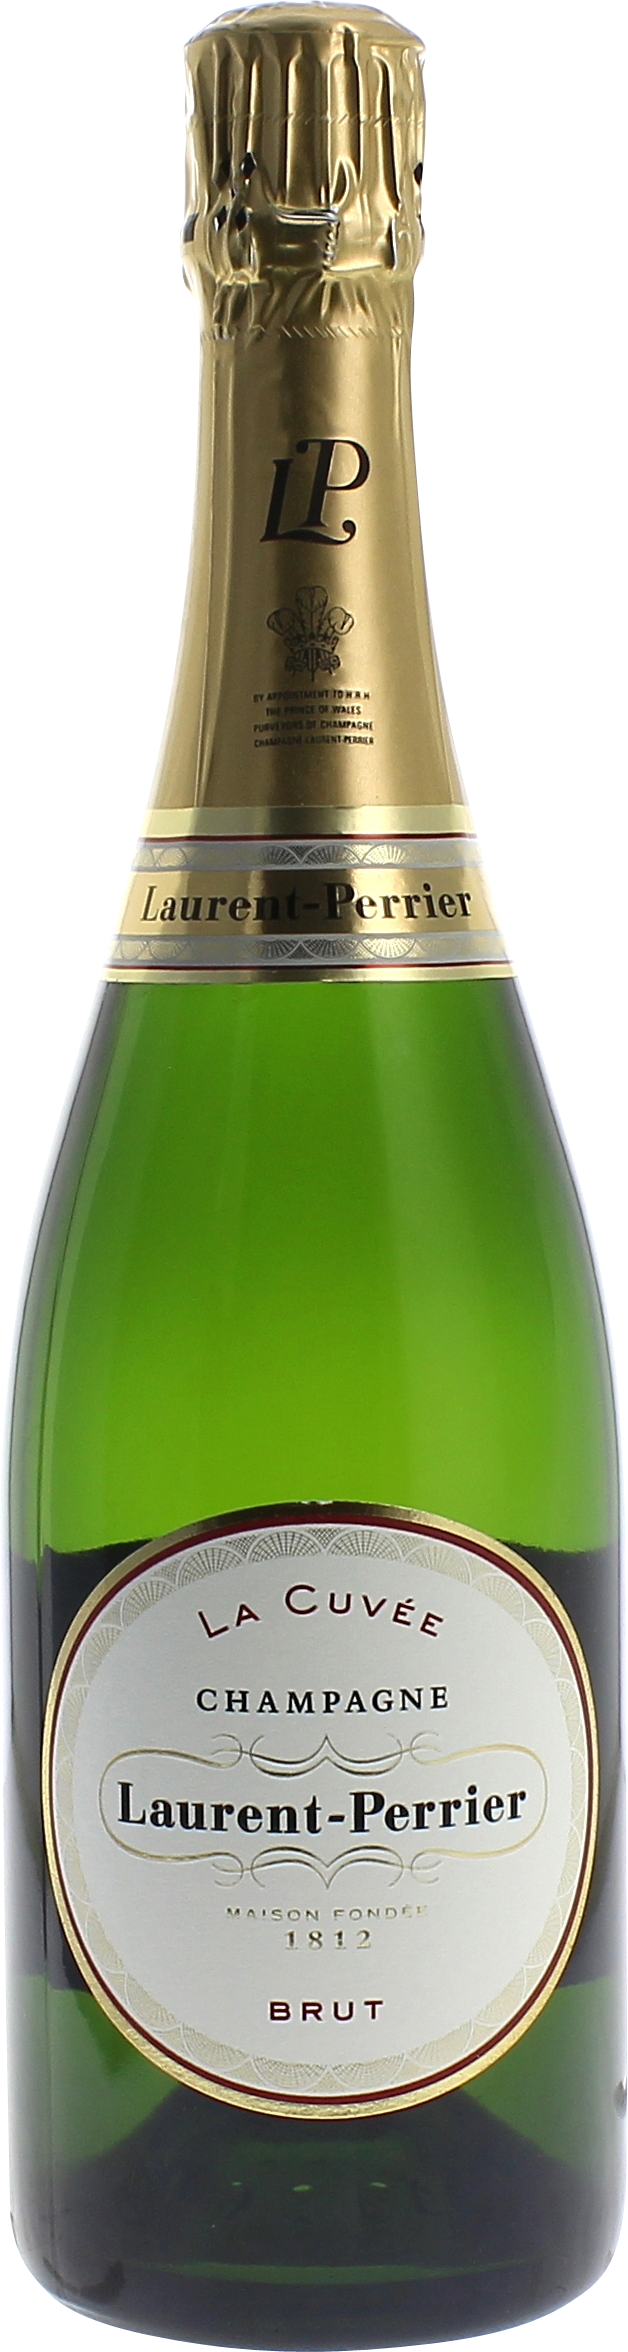 Laurent-Perrier la Cuvée En étui  6 per case